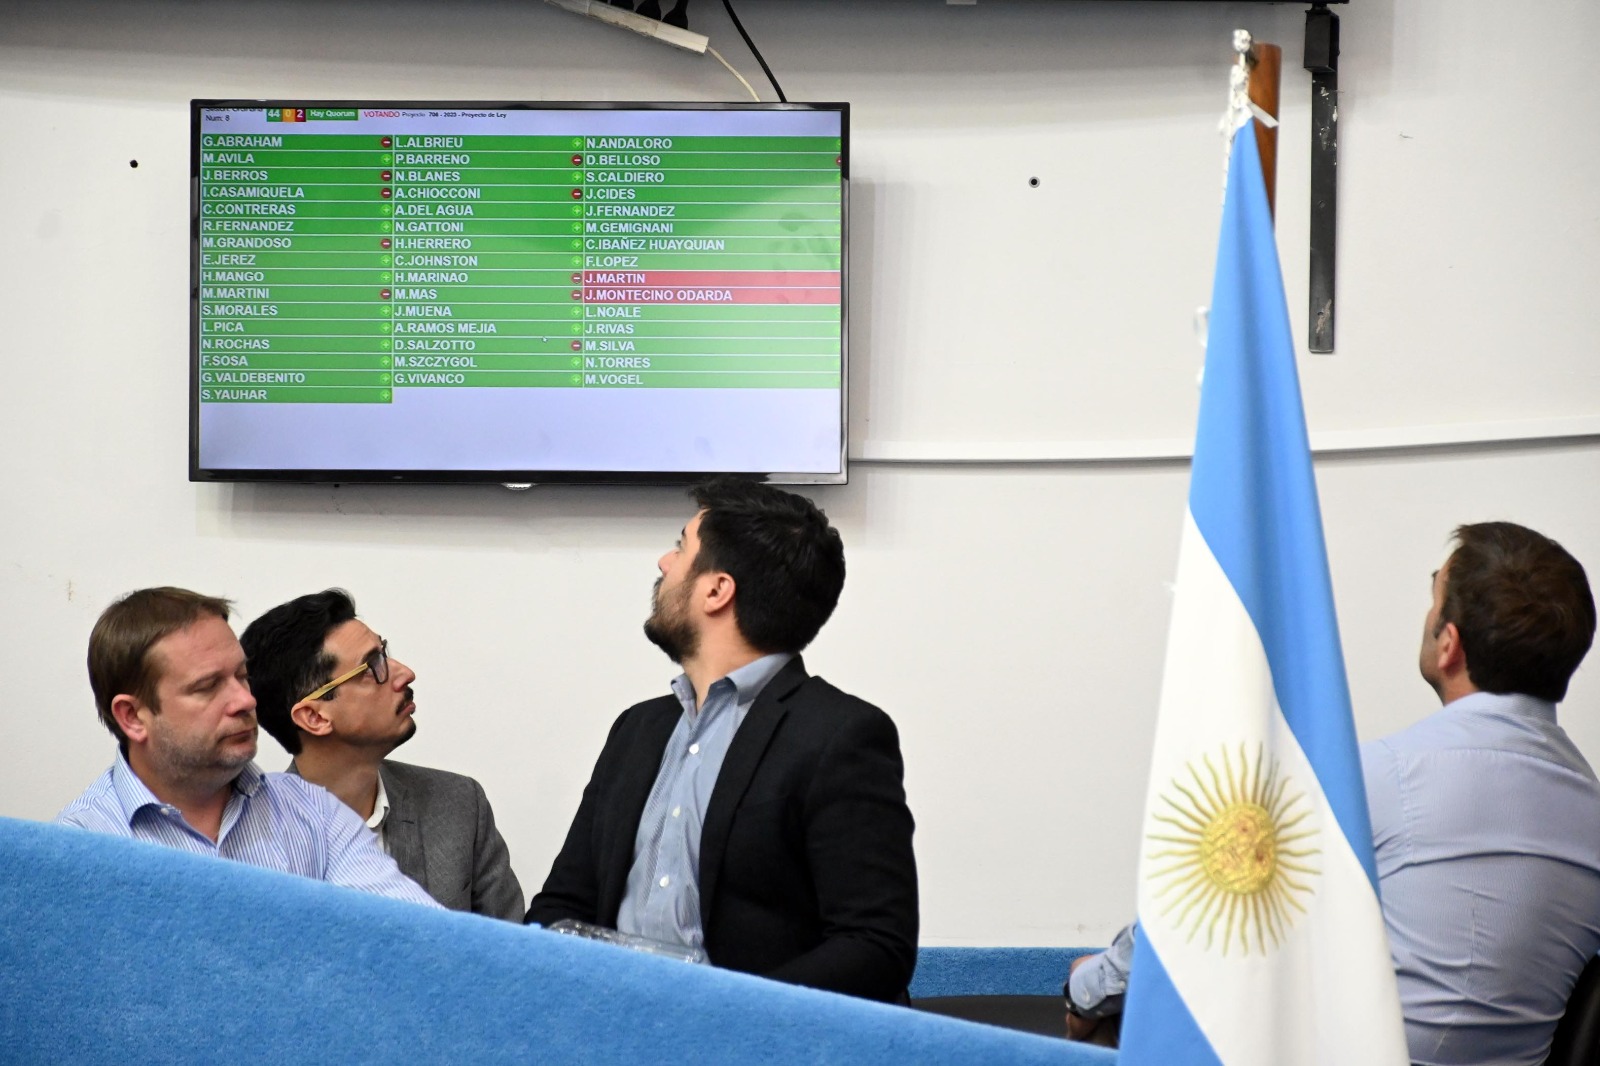 El equipo de Tierras y de Minería observando la pantalla en el momento de la votación de los proyectos. Foto Marcelo Ochoa